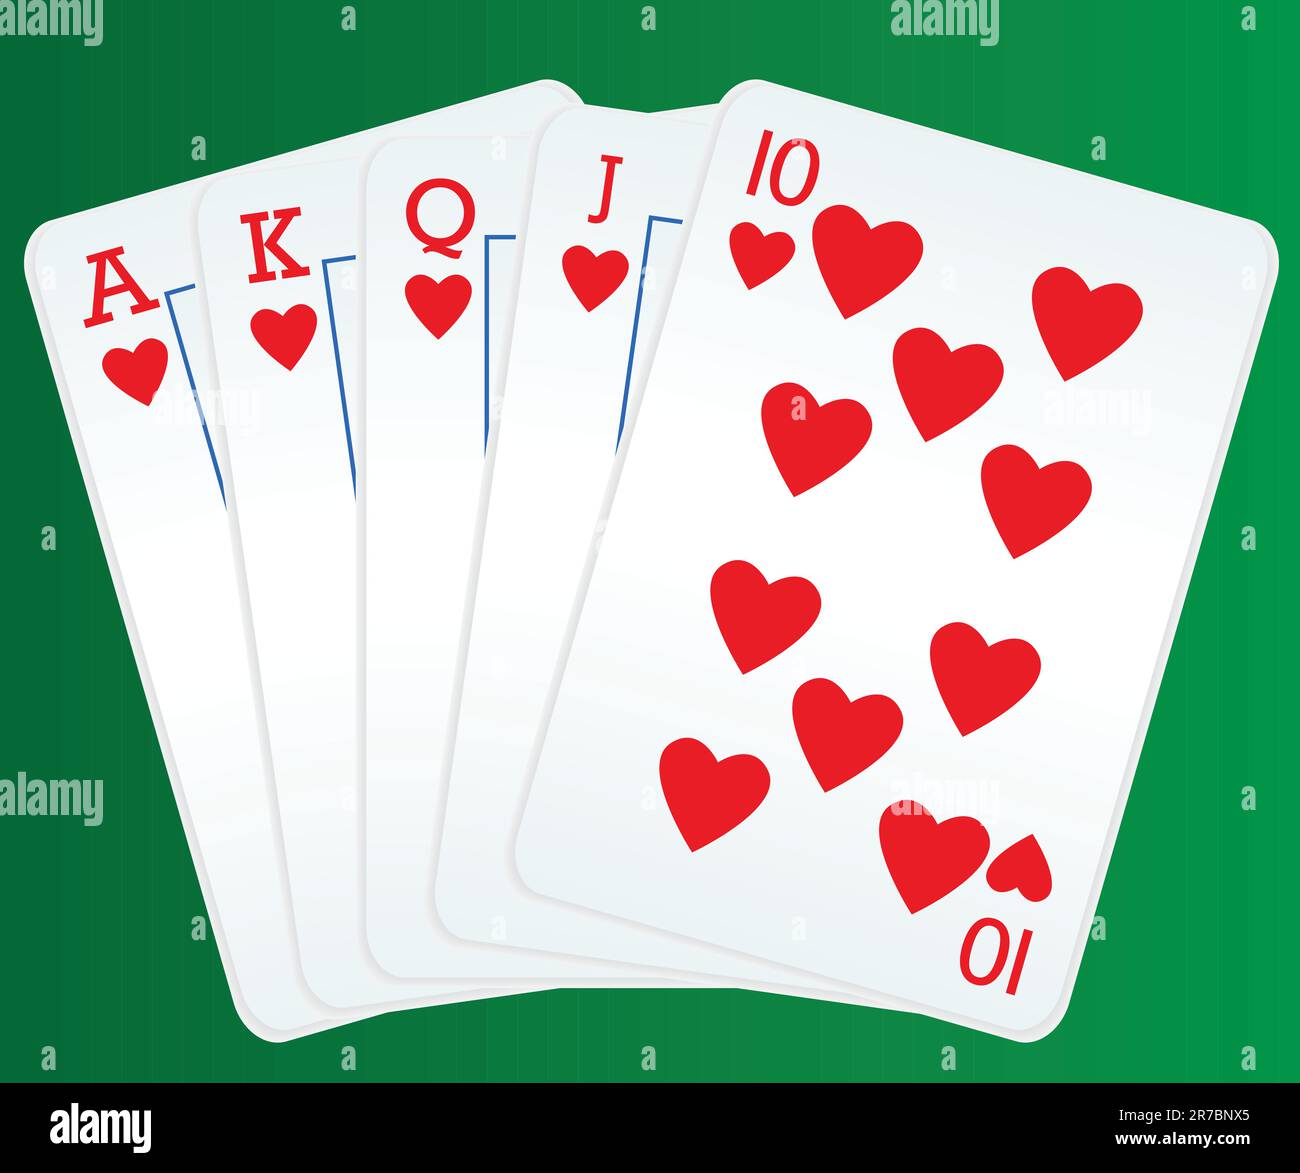 Cartes de poker montrant le flush royal Illustration de Vecteur